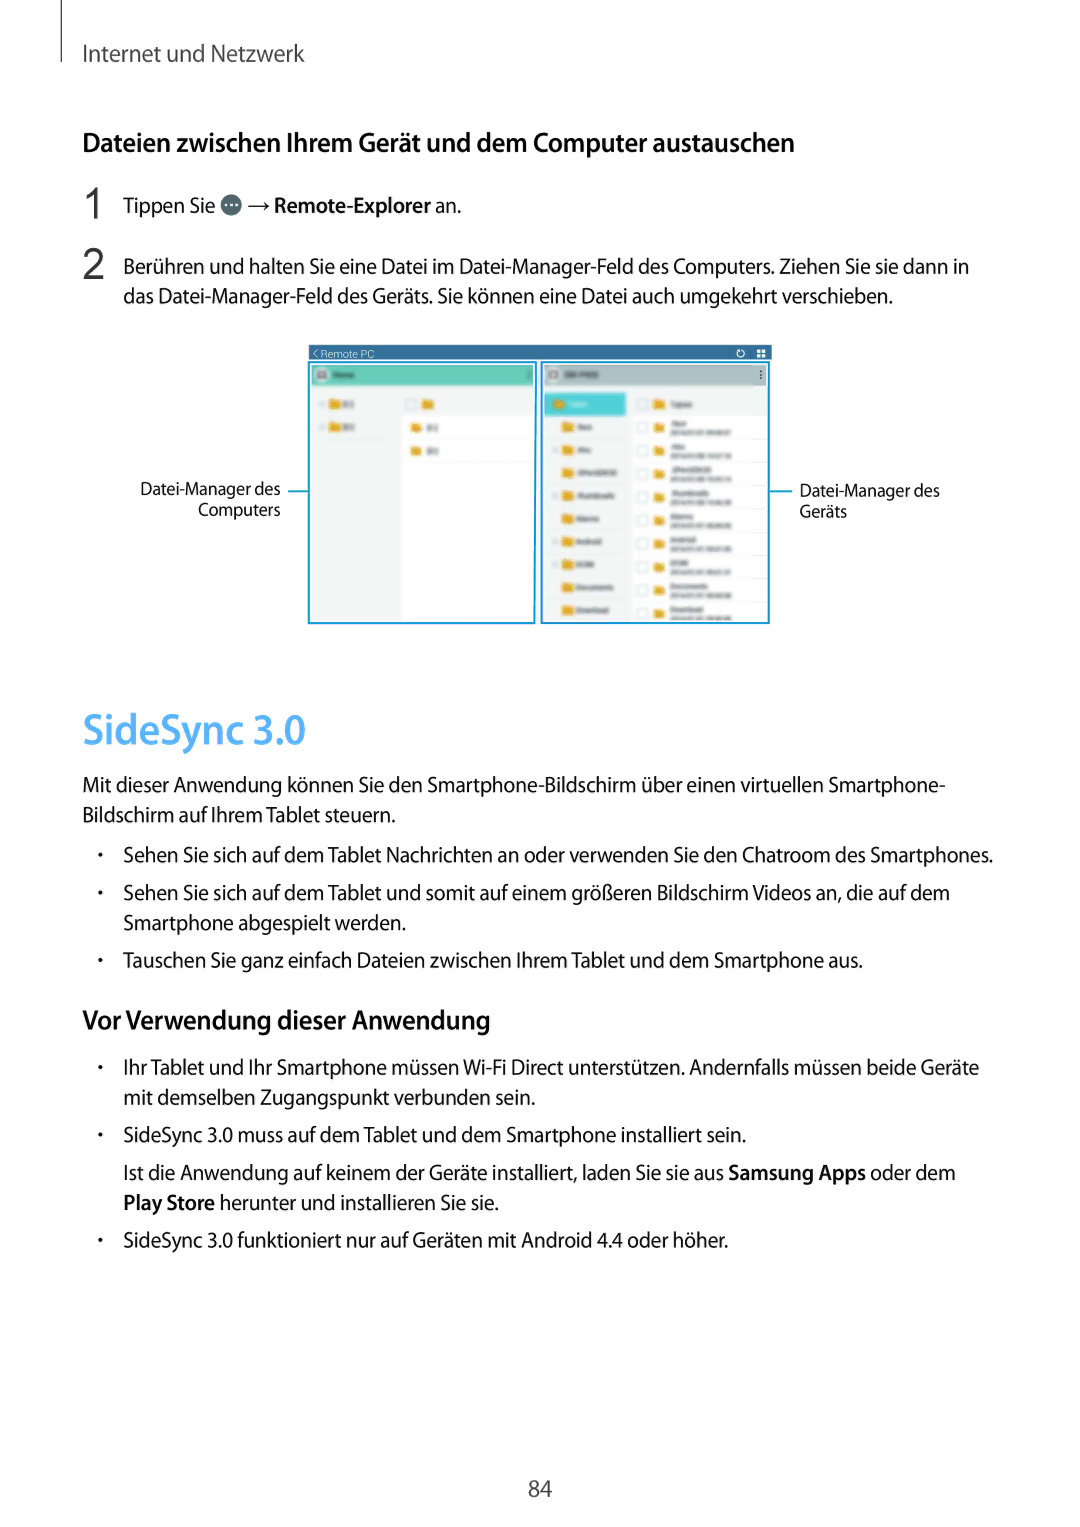 Samsung SM-T320NZKAATO SideSync, Dateien zwischen Ihrem Gerät und dem Computer austauschen, Tippen Sie →Remote-Explorer an 